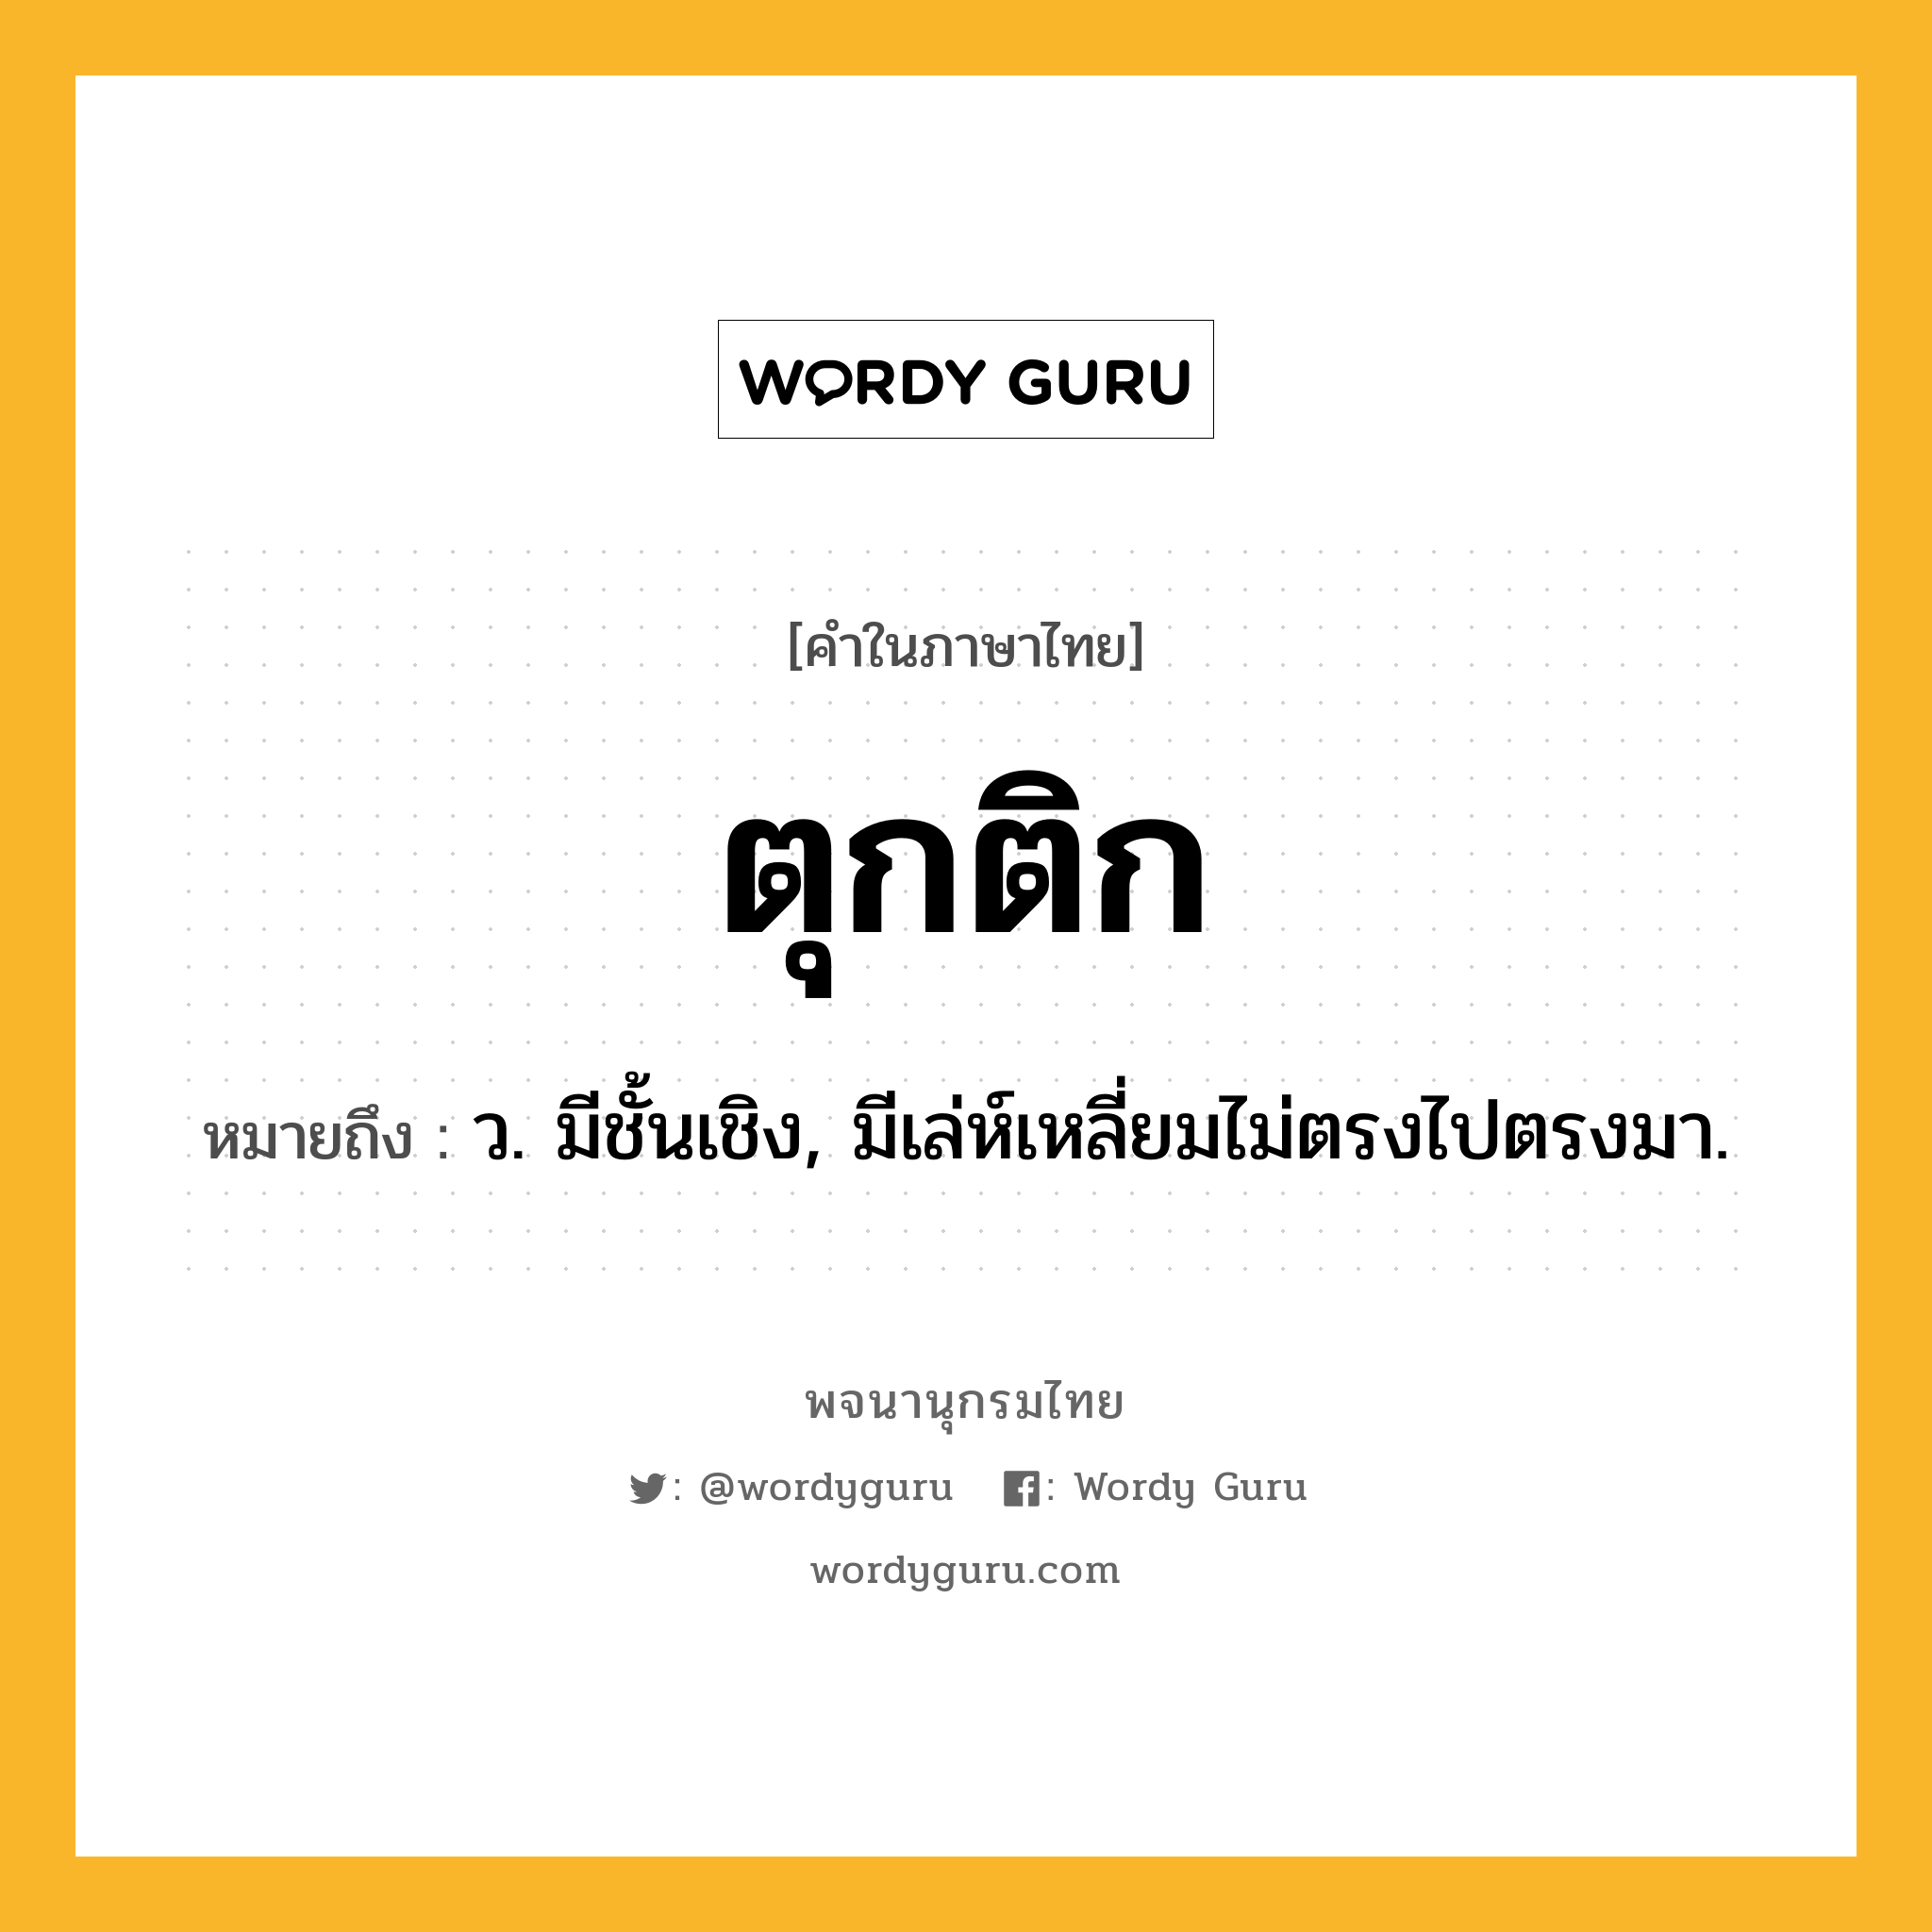 ตุกติก หมายถึงอะไร?, คำในภาษาไทย ตุกติก หมายถึง ว. มีชั้นเชิง, มีเล่ห์เหลี่ยมไม่ตรงไปตรงมา.